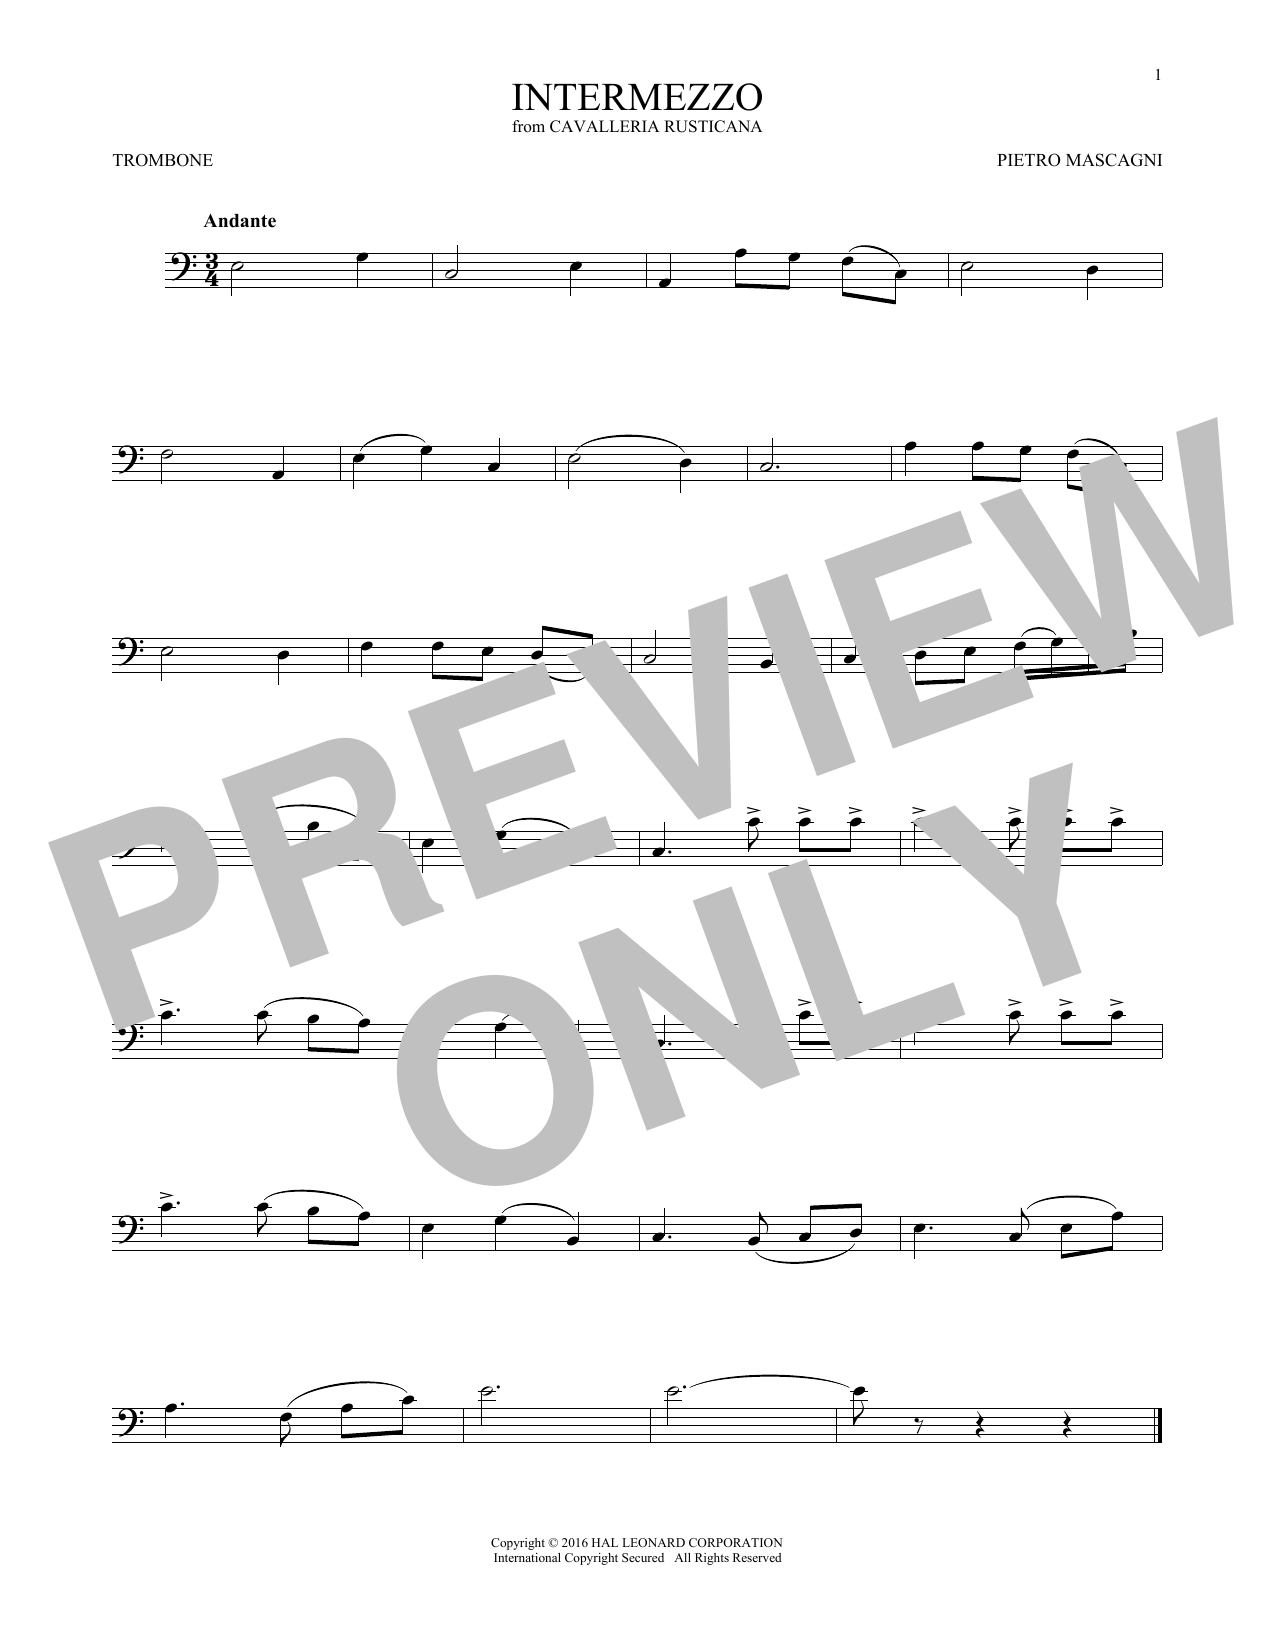 Intermezzo (Trombone Solo) von Pietro Mascagni